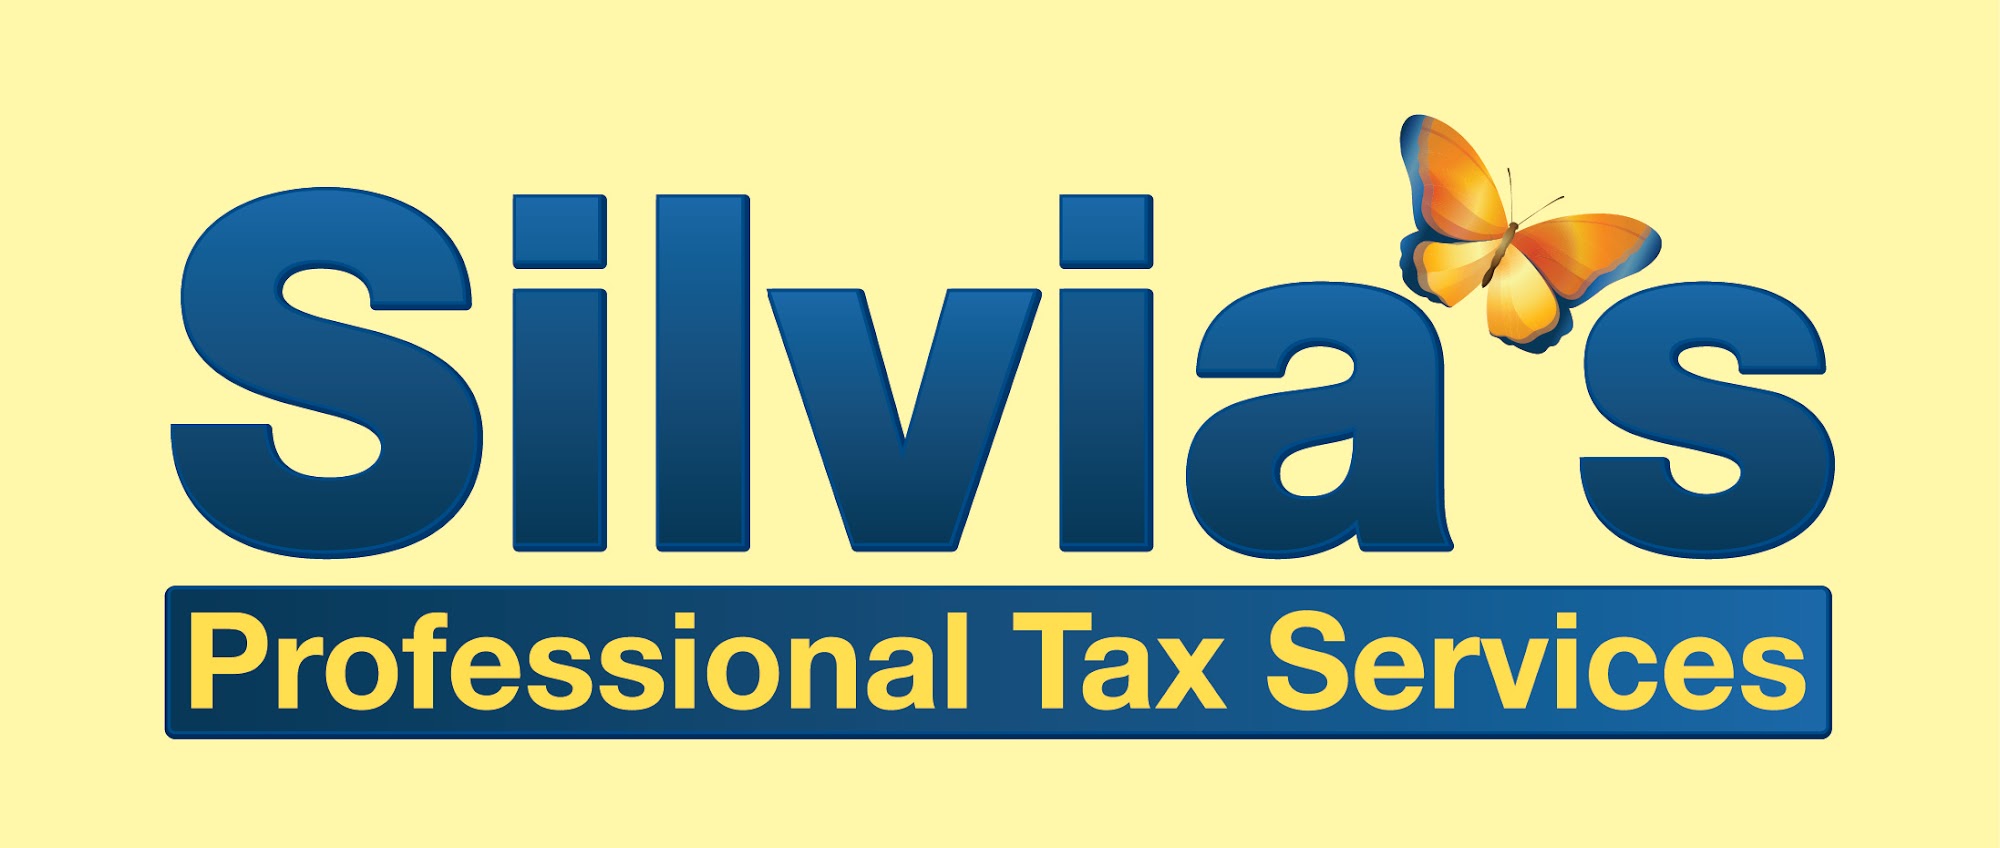 Silvia's Professional Tax Services 1015 E Lincoln Ave, Sunnyside Washington 98944